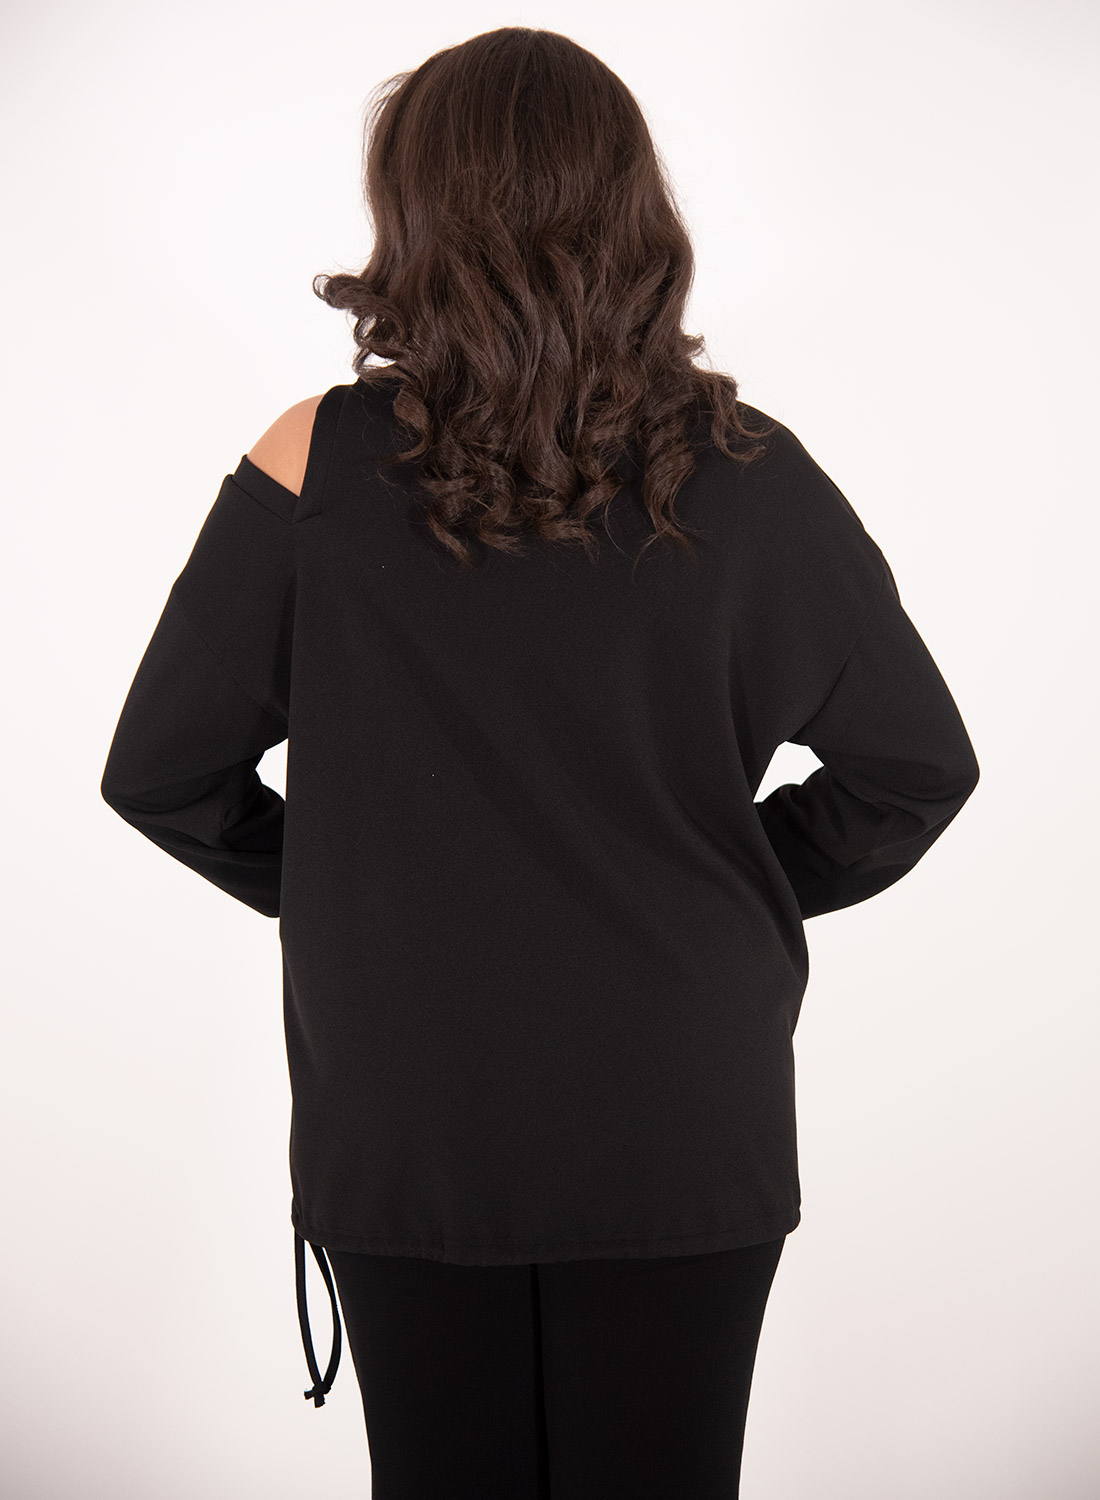 Μαύρη εντυπωσιακή θηλυκή μπλούζα